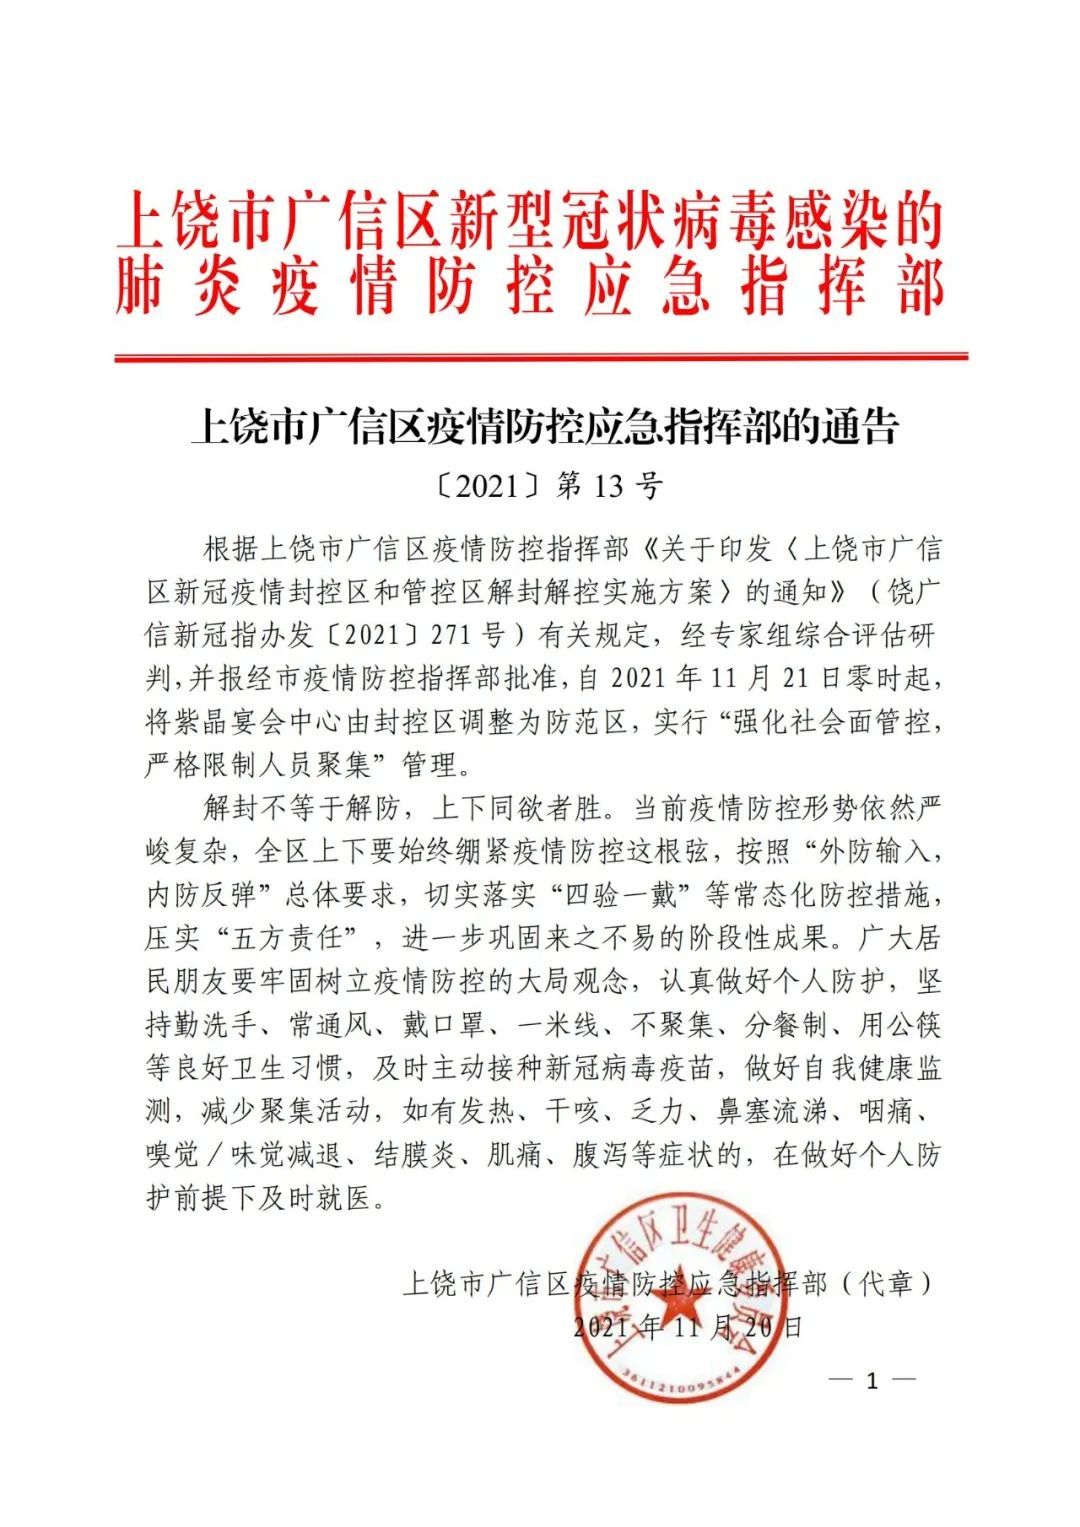 上饶市广信区疫情防控应急指挥部的通告 【2021】第13号 紫晶宴会中心由封控区调整为防范区